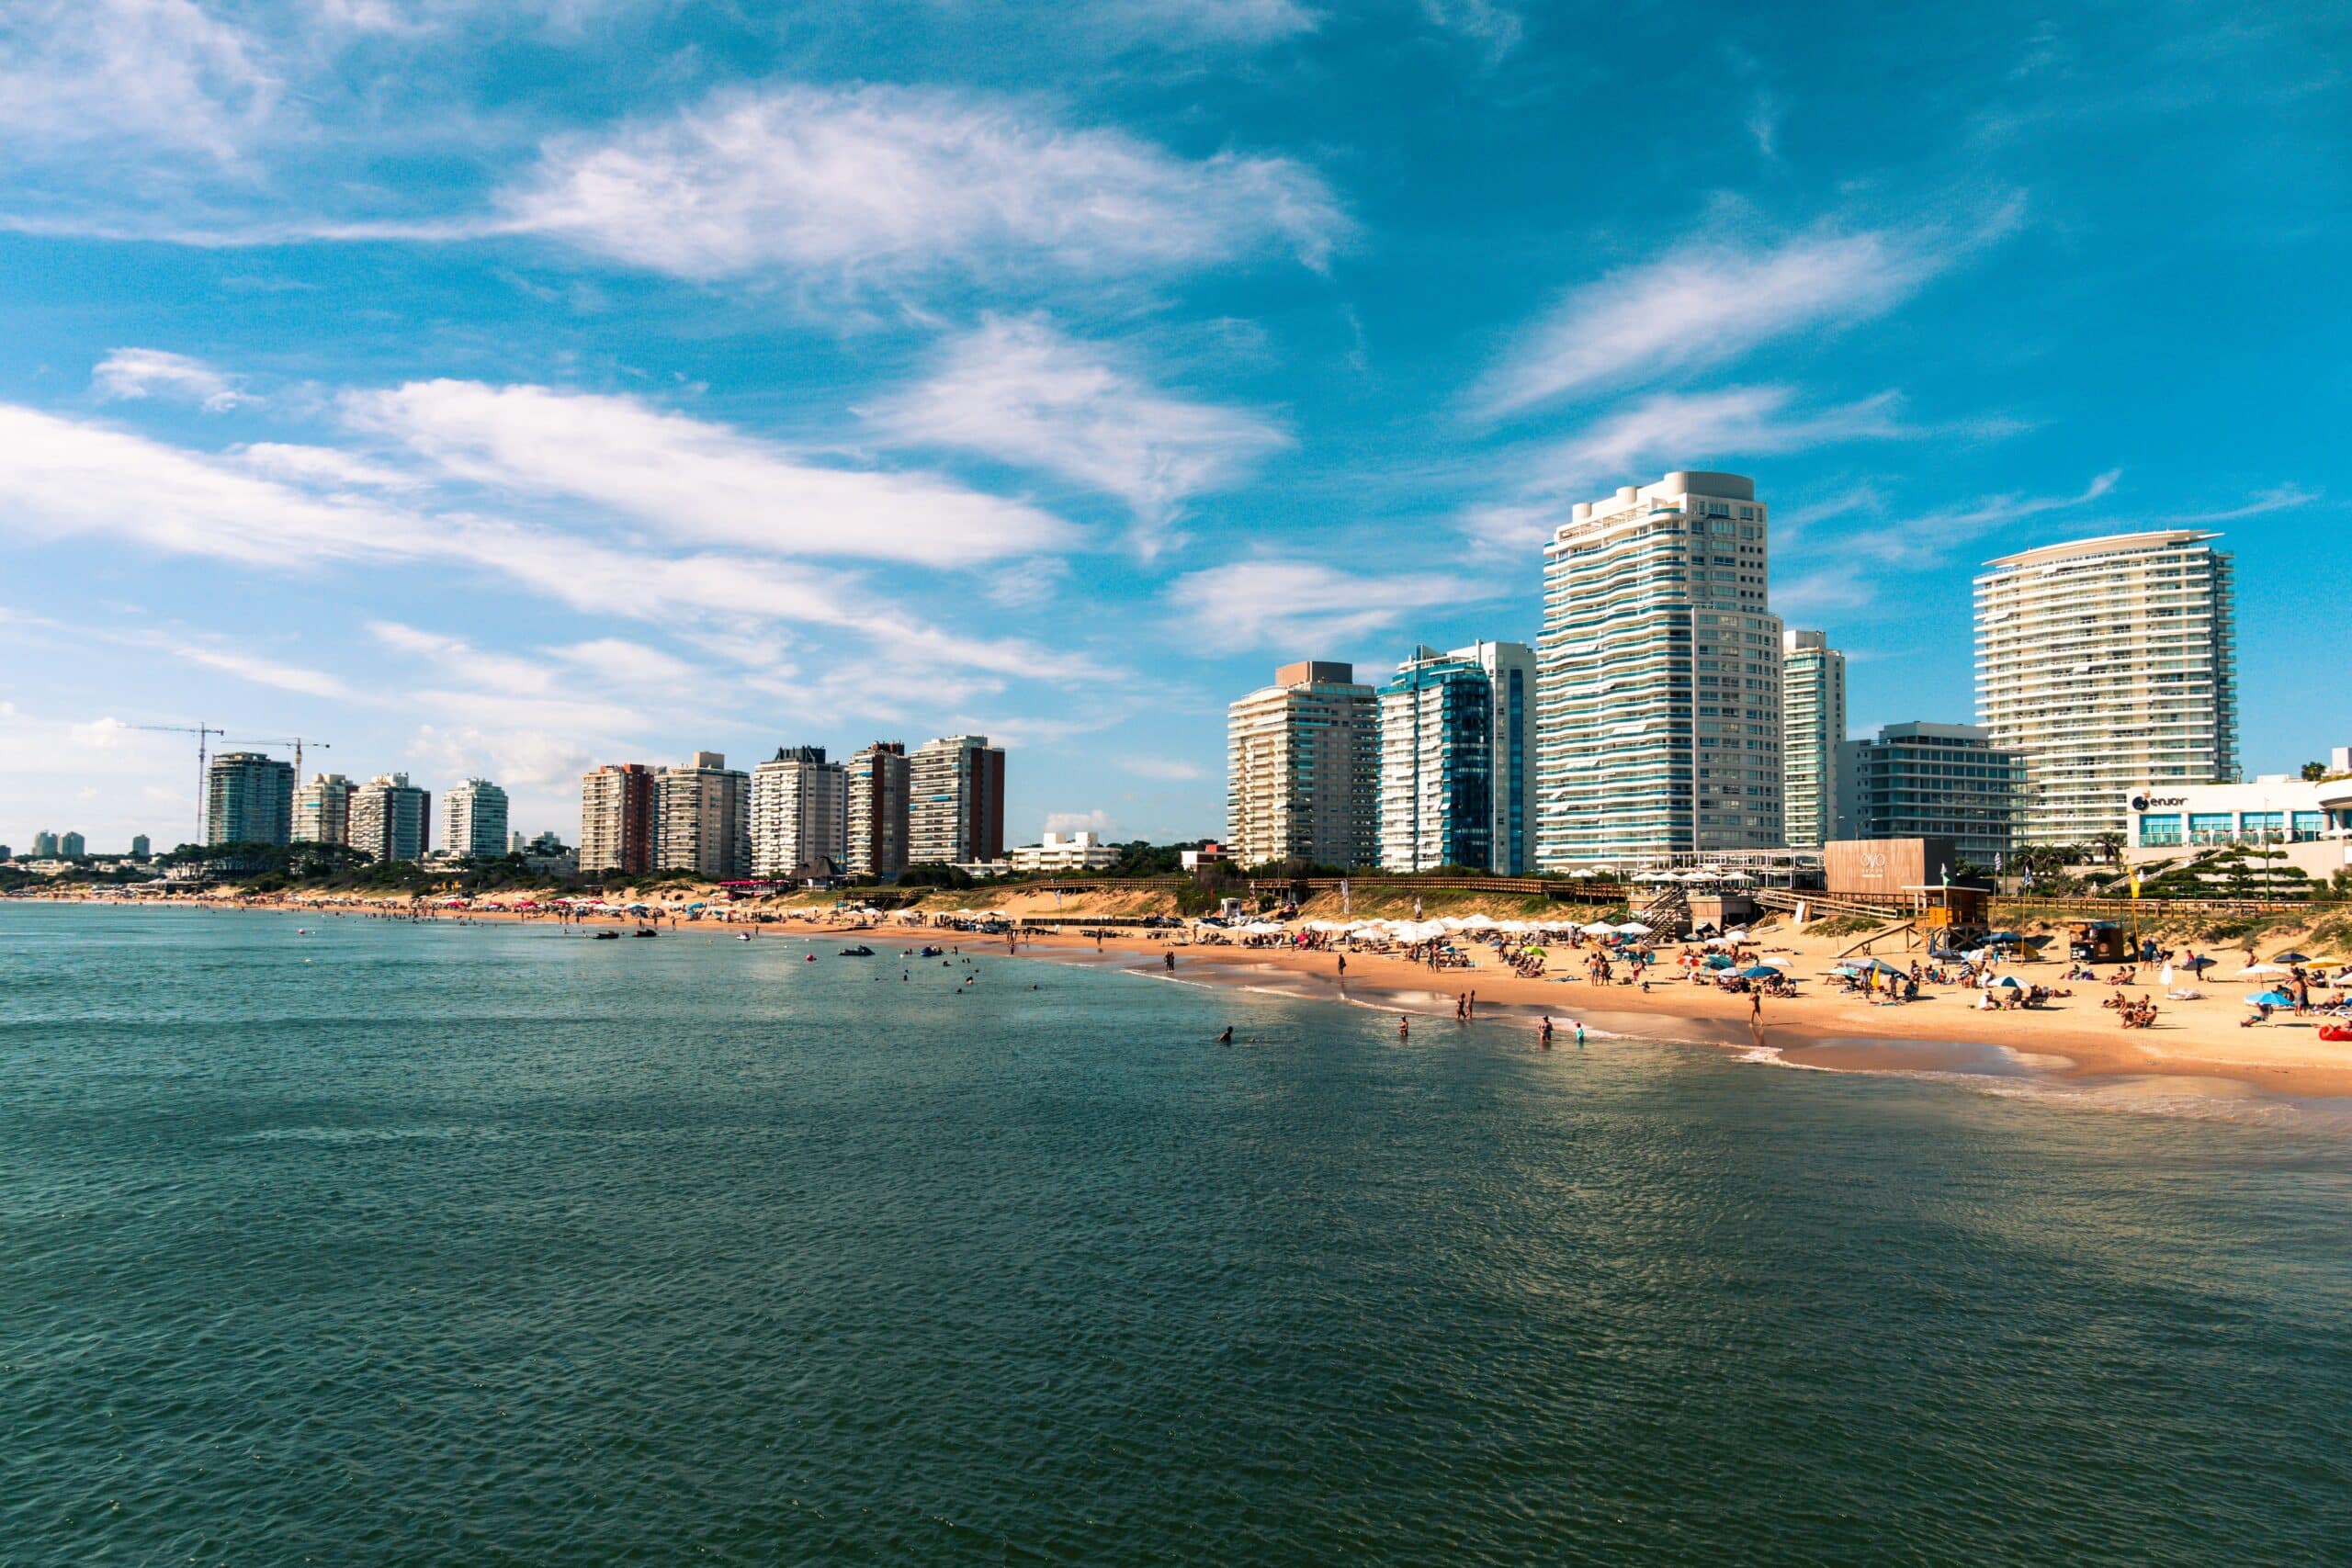 Vista do Punta del Este Departamento de Maldonado, Uruguai com prédios à beira-mar com mar a alguns turistas na areia.